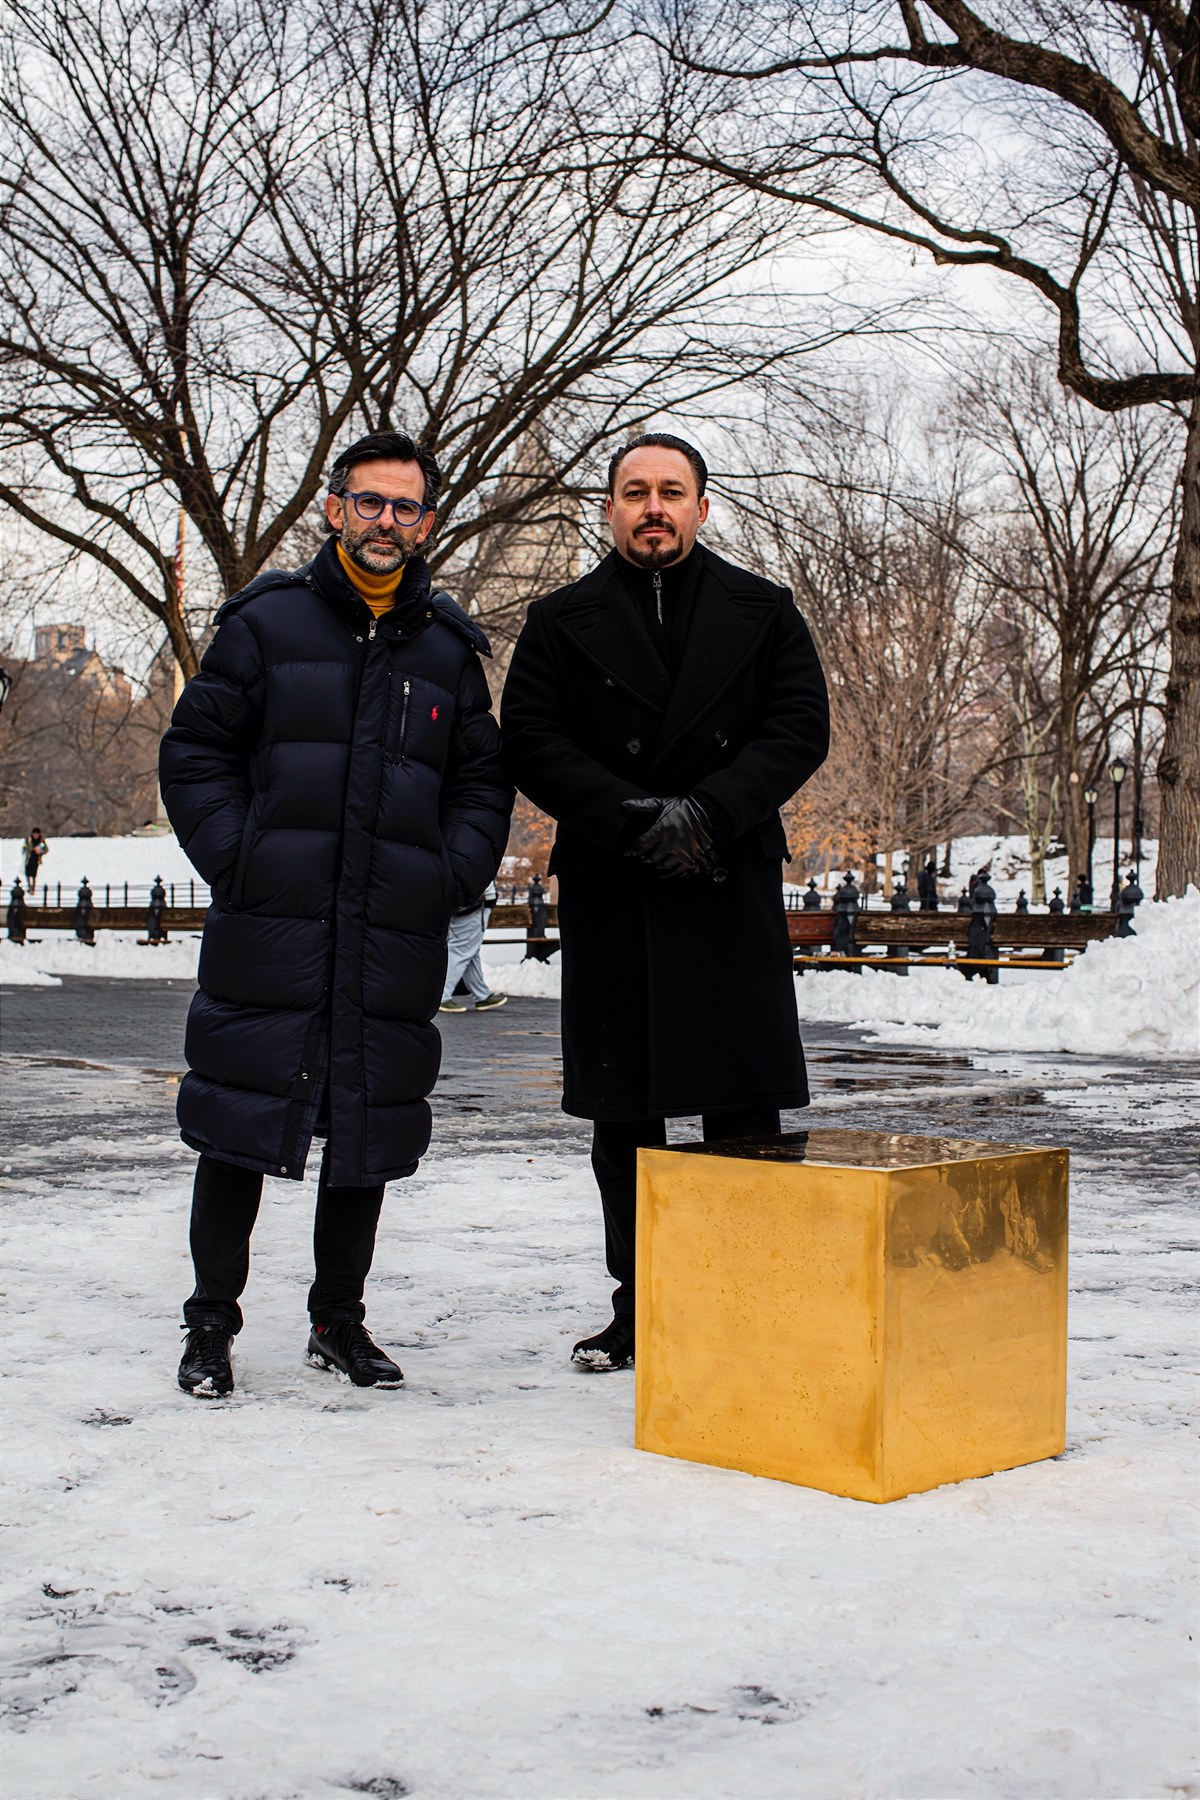 Bild 1: Niclas Castello und Klemens Hallmann bei der Enthüllung des Castello Cube im Central Park 